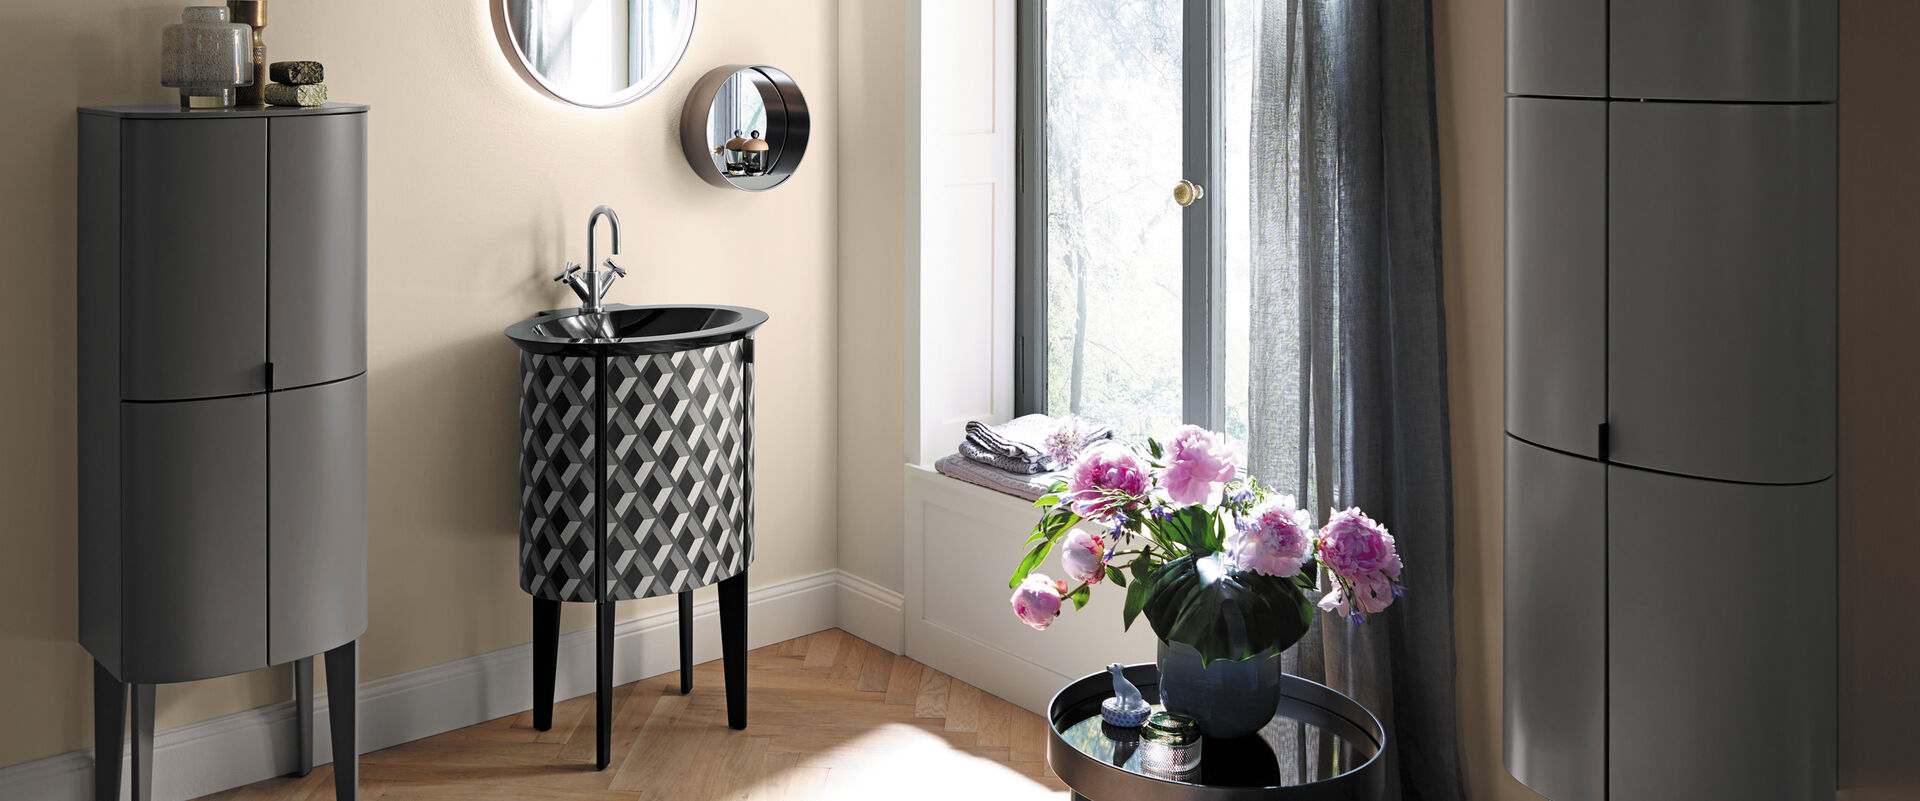 Bad für Gäste mit grauen abgerundeten Badmöbeln. Waschbecken in schwarz weiß. Runde Spiegel